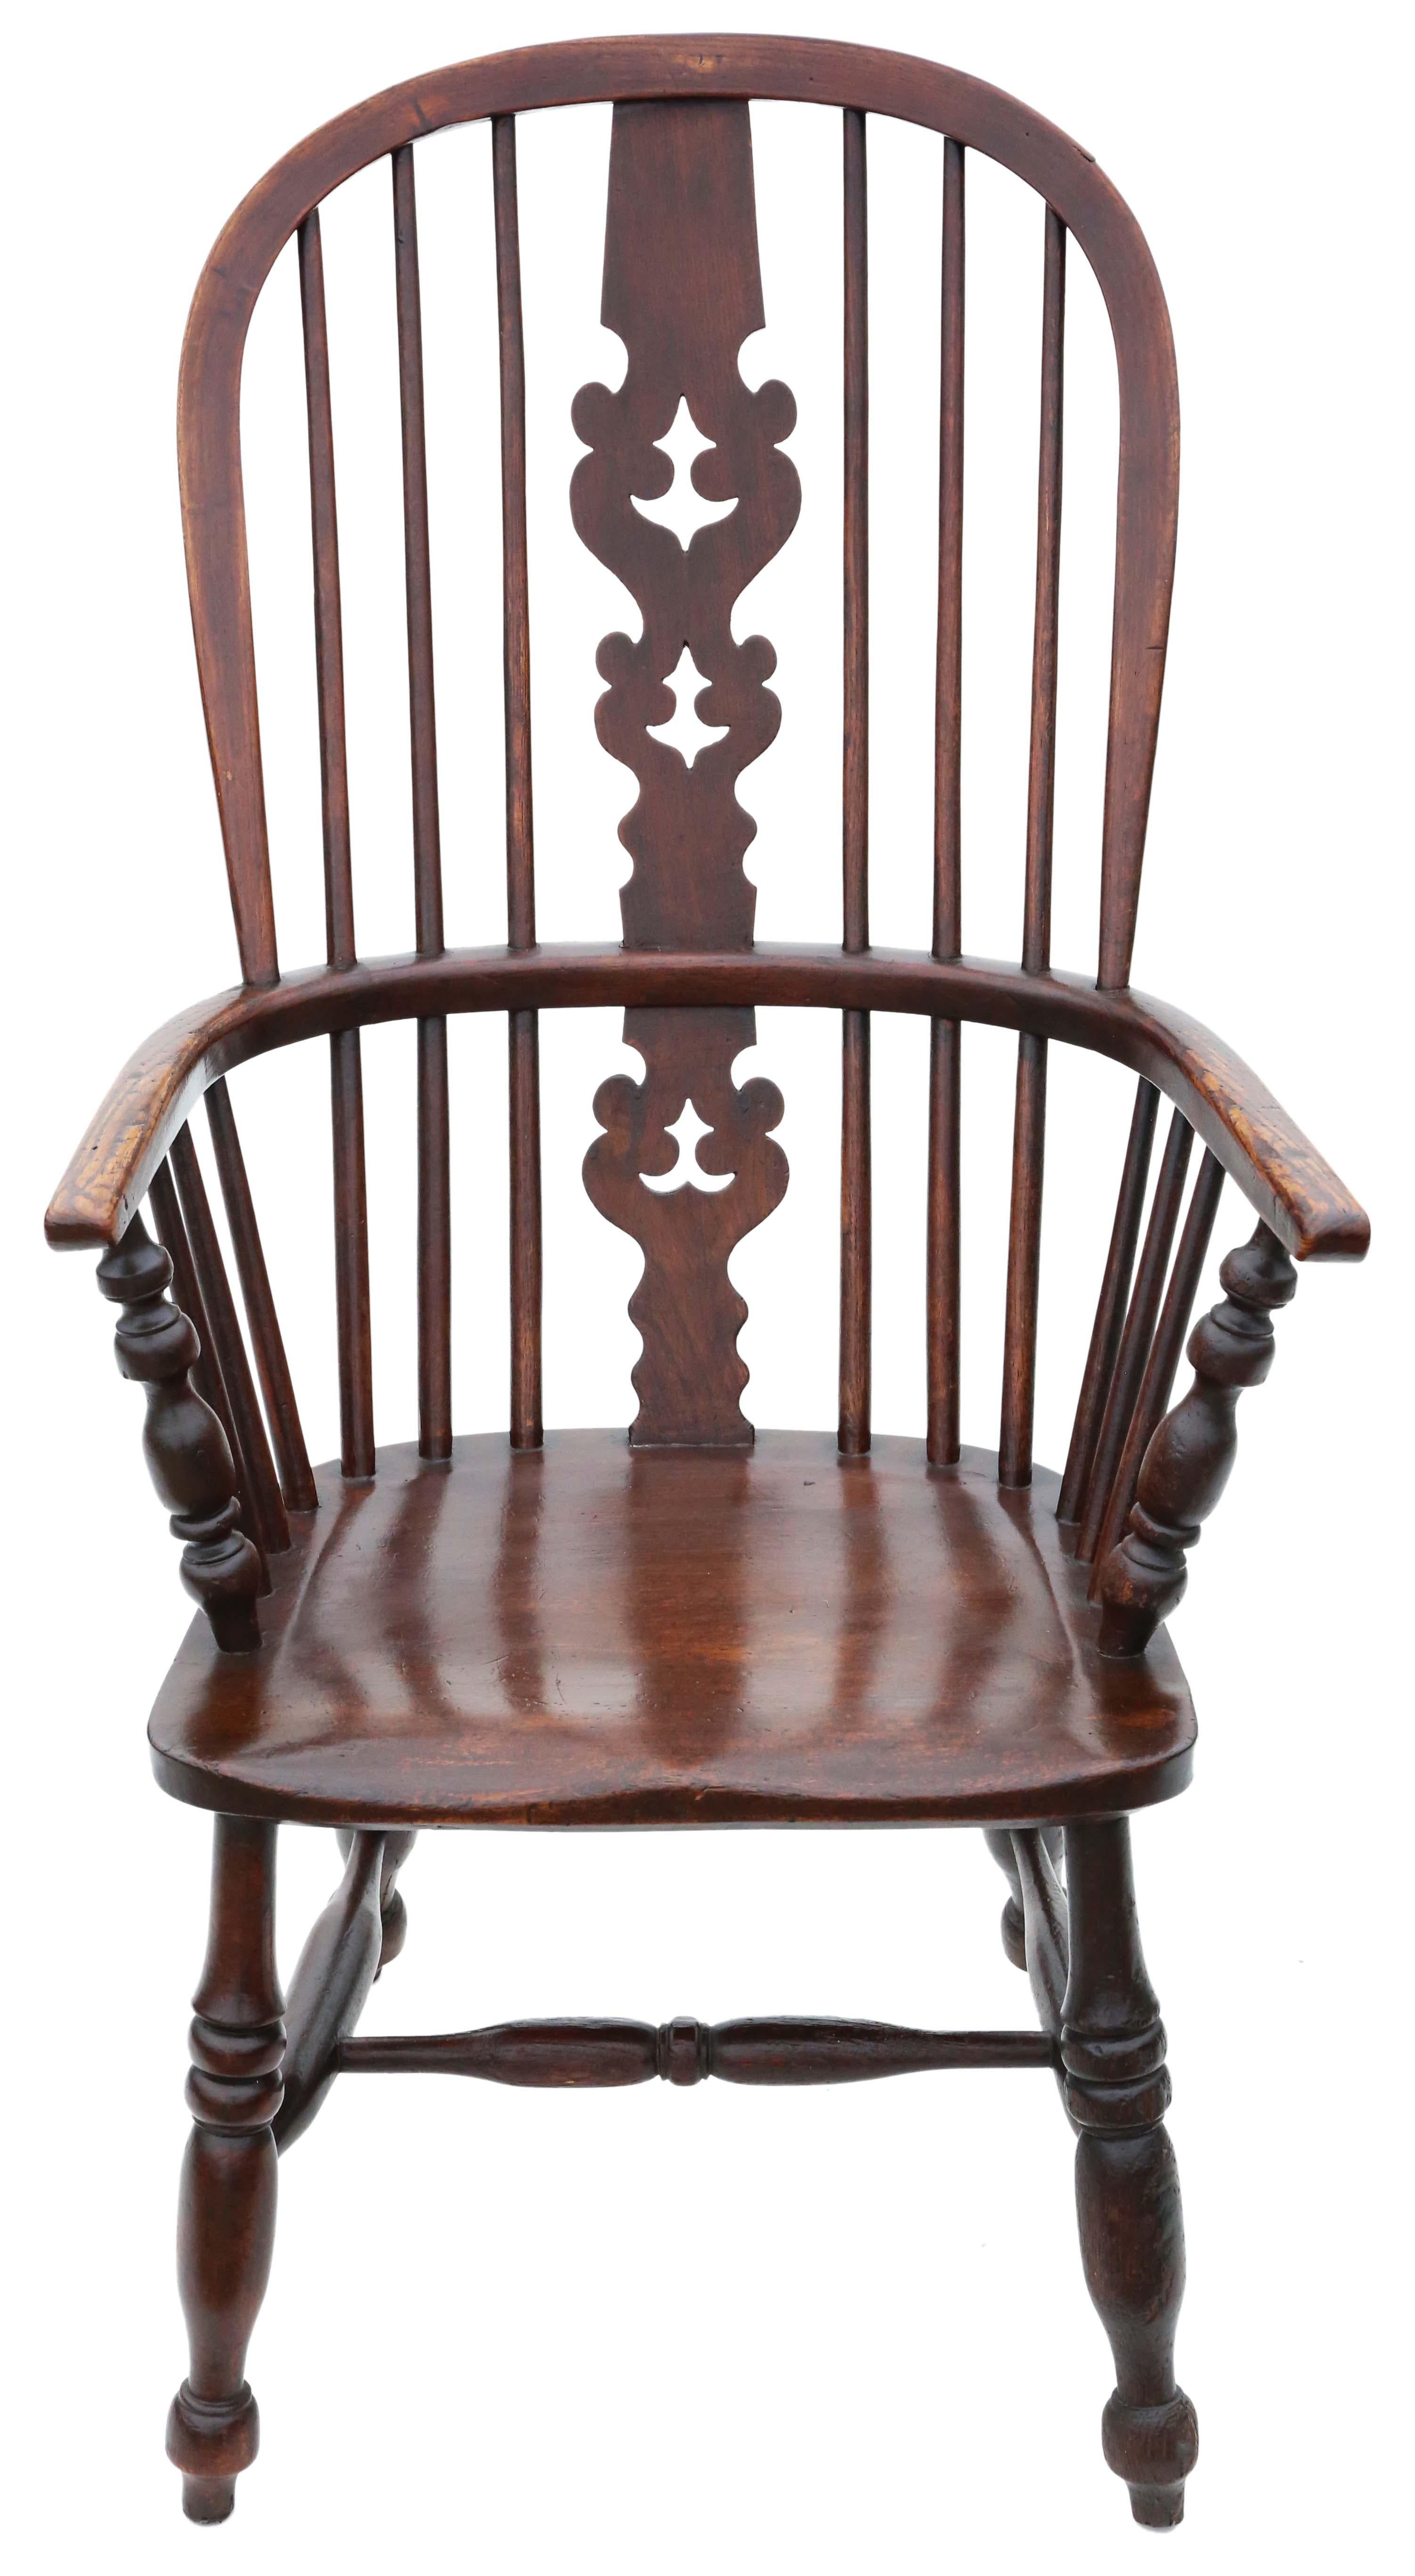 Antike Qualität 19. Jahrhundert Esche und Ulme Windsor Stuhl Esstisch Sessel.

Solide und stark, ohne lose Verbindungen und ohne Holzwurm. Voller Alter, Charakter und Charme.

An der richtigen Stelle würde es großartig aussehen!

Maximale